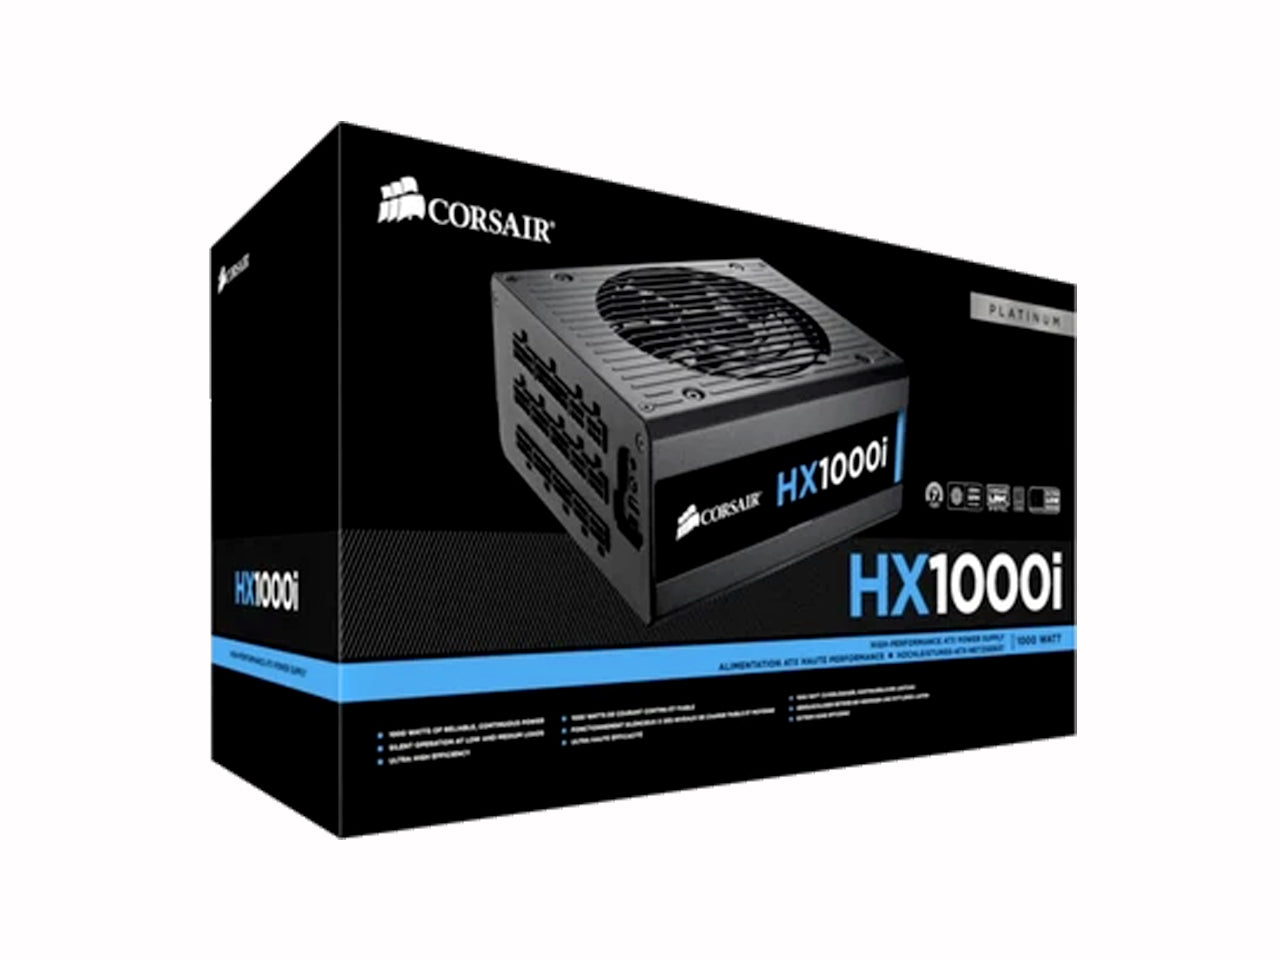 Corsair HX1000i 1000 Watt 80 Plus Platinum Certified Power Supply